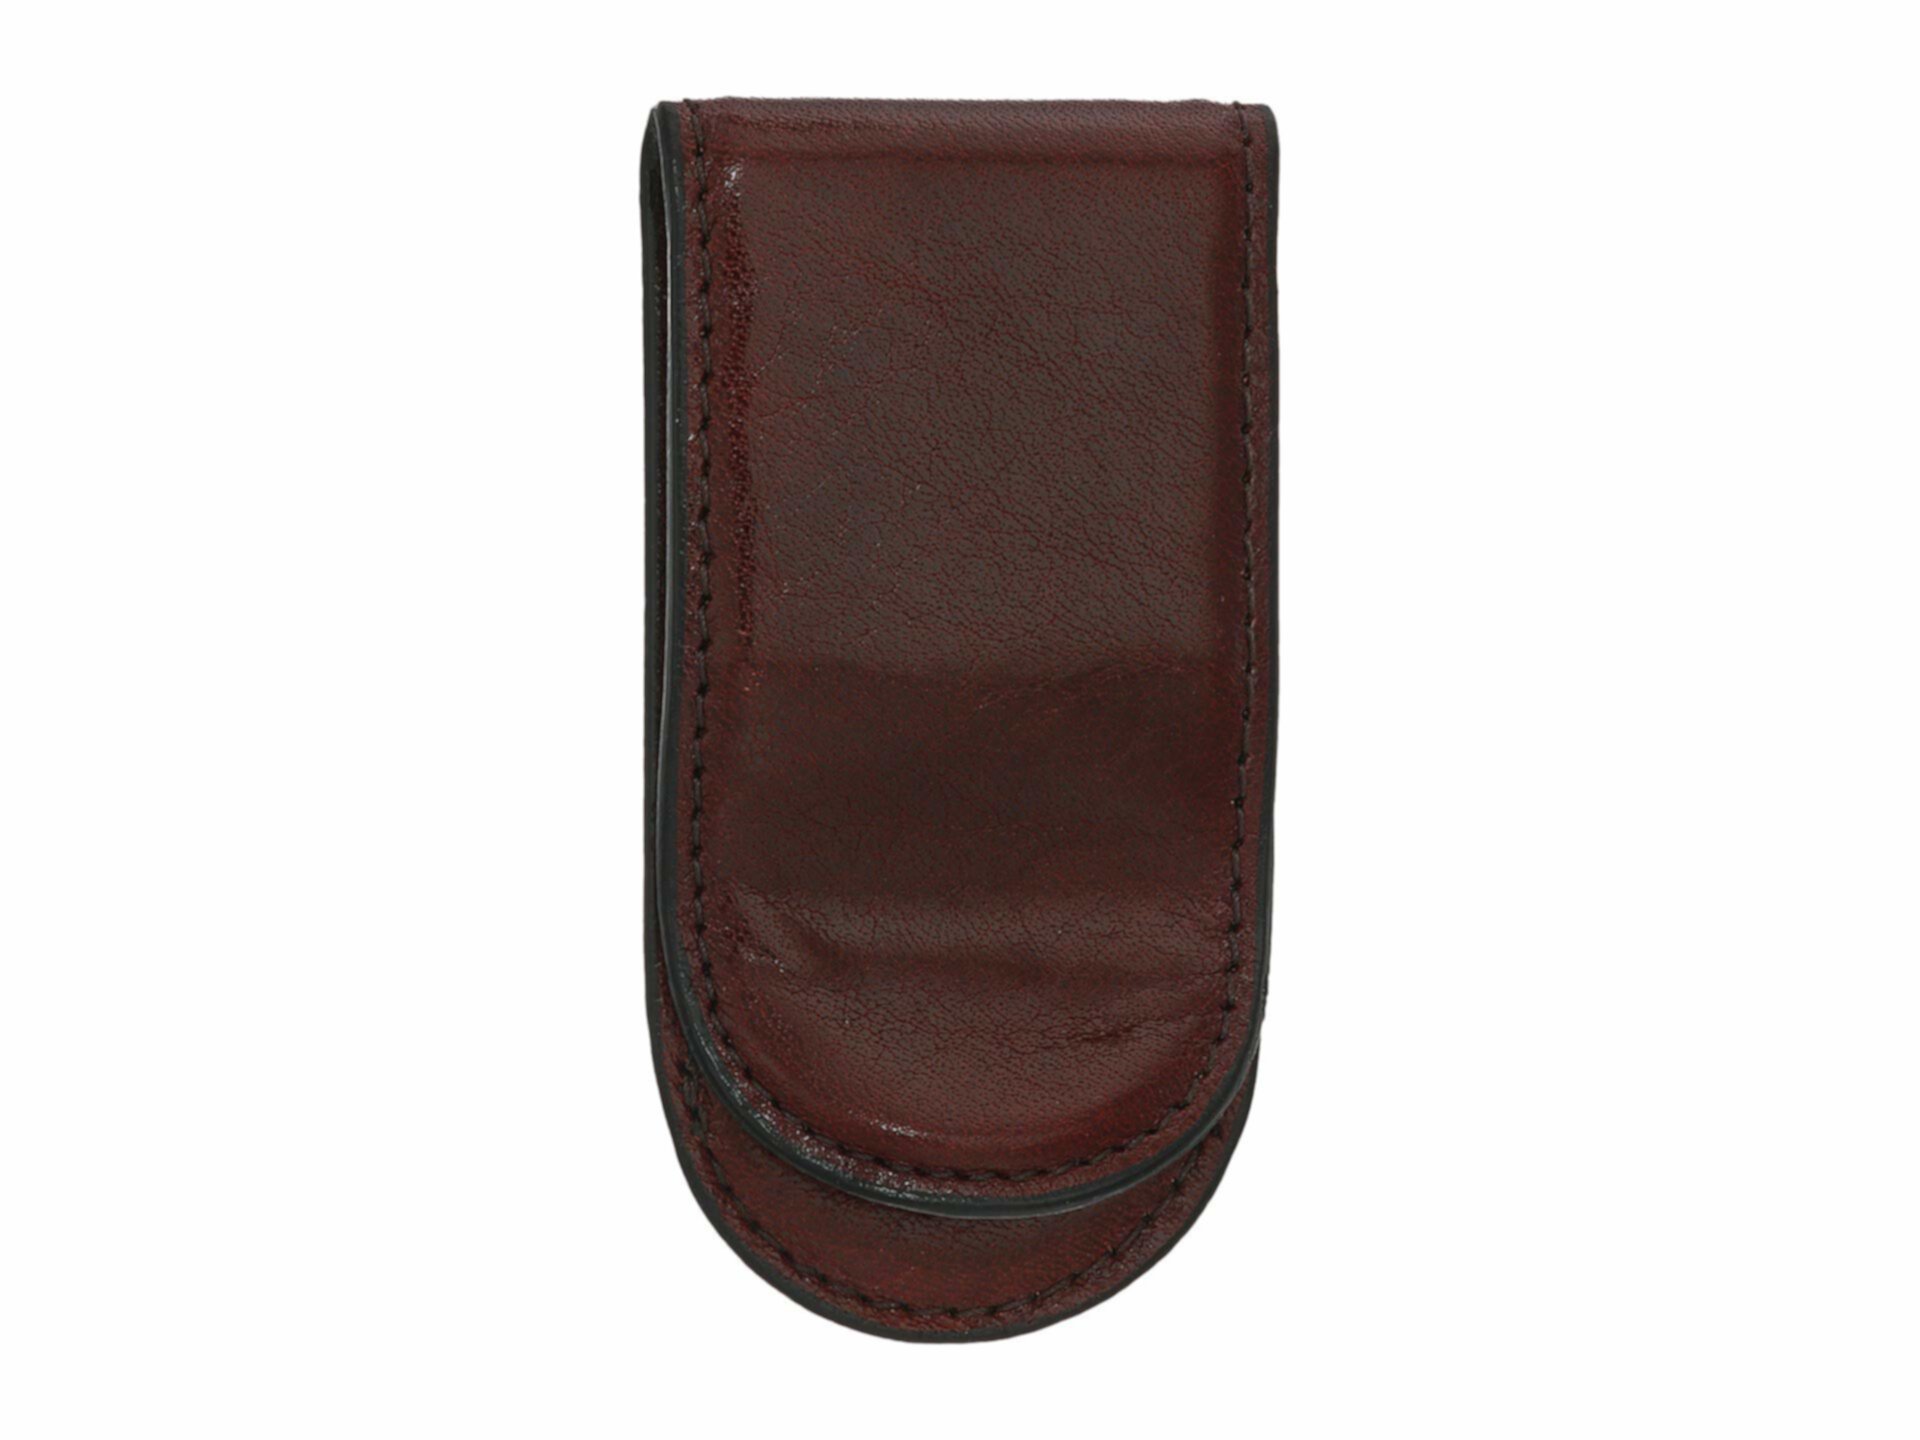 Коллекция Old Leather - Зажим для денег с кожаным покрытием BOSCA